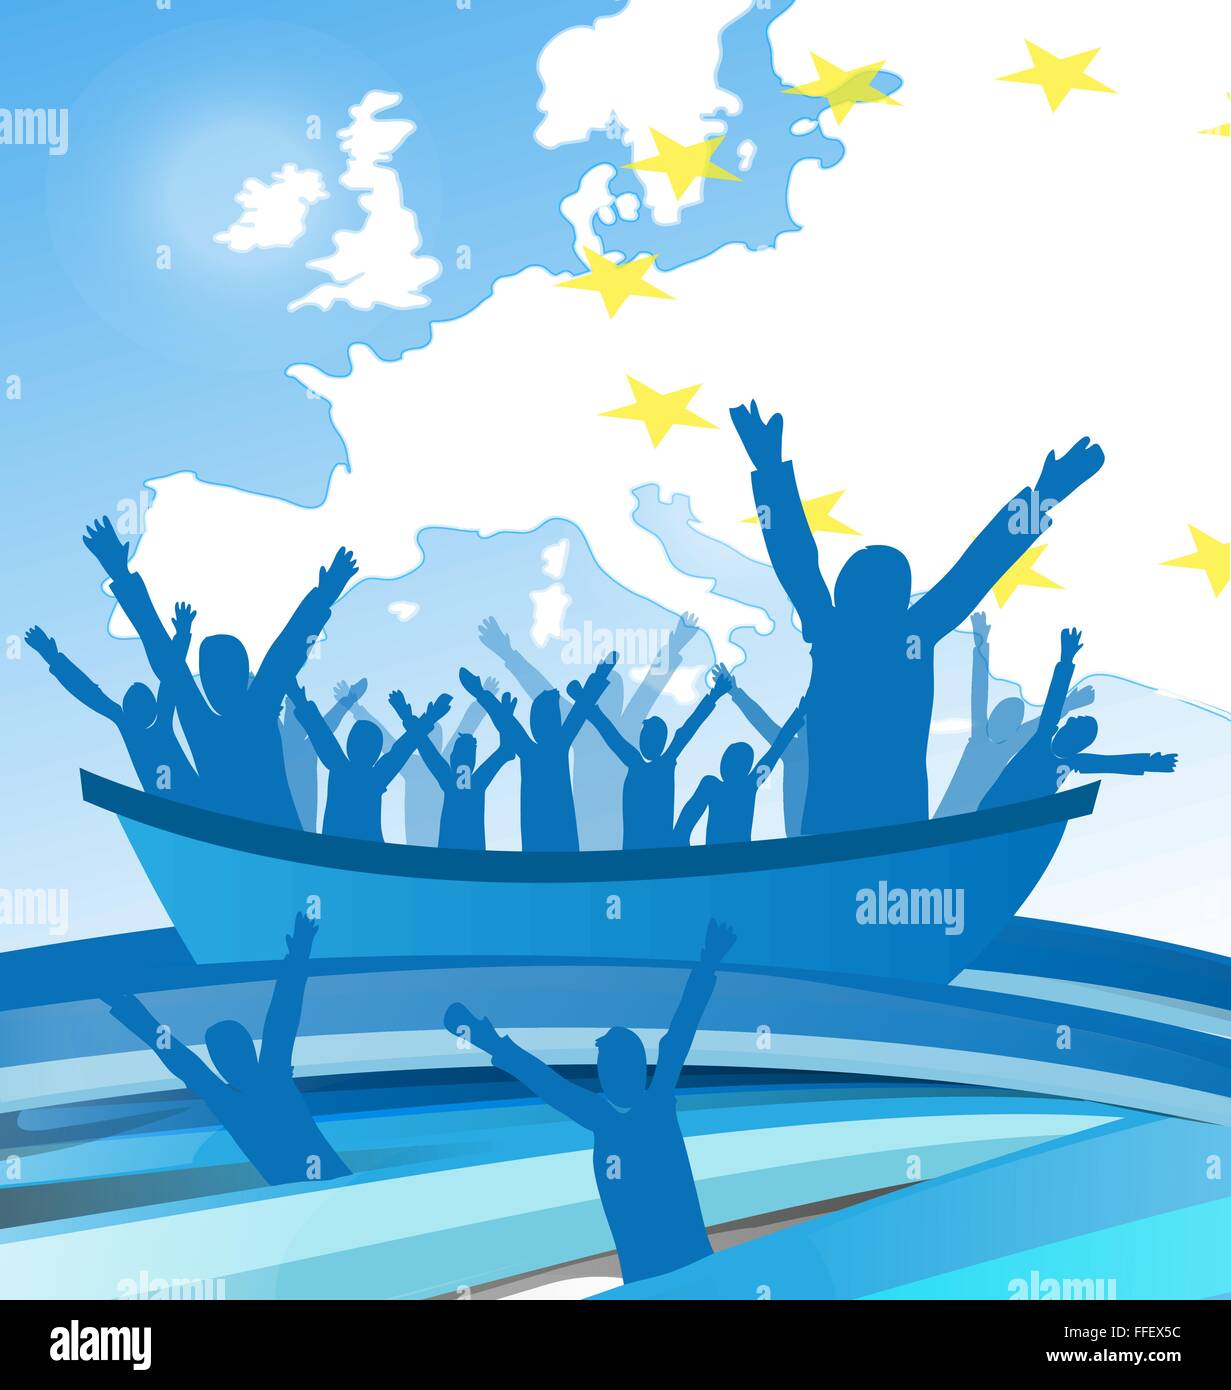 Les gens de l'immigration avec le bateau sur la carte européenne Illustration de Vecteur